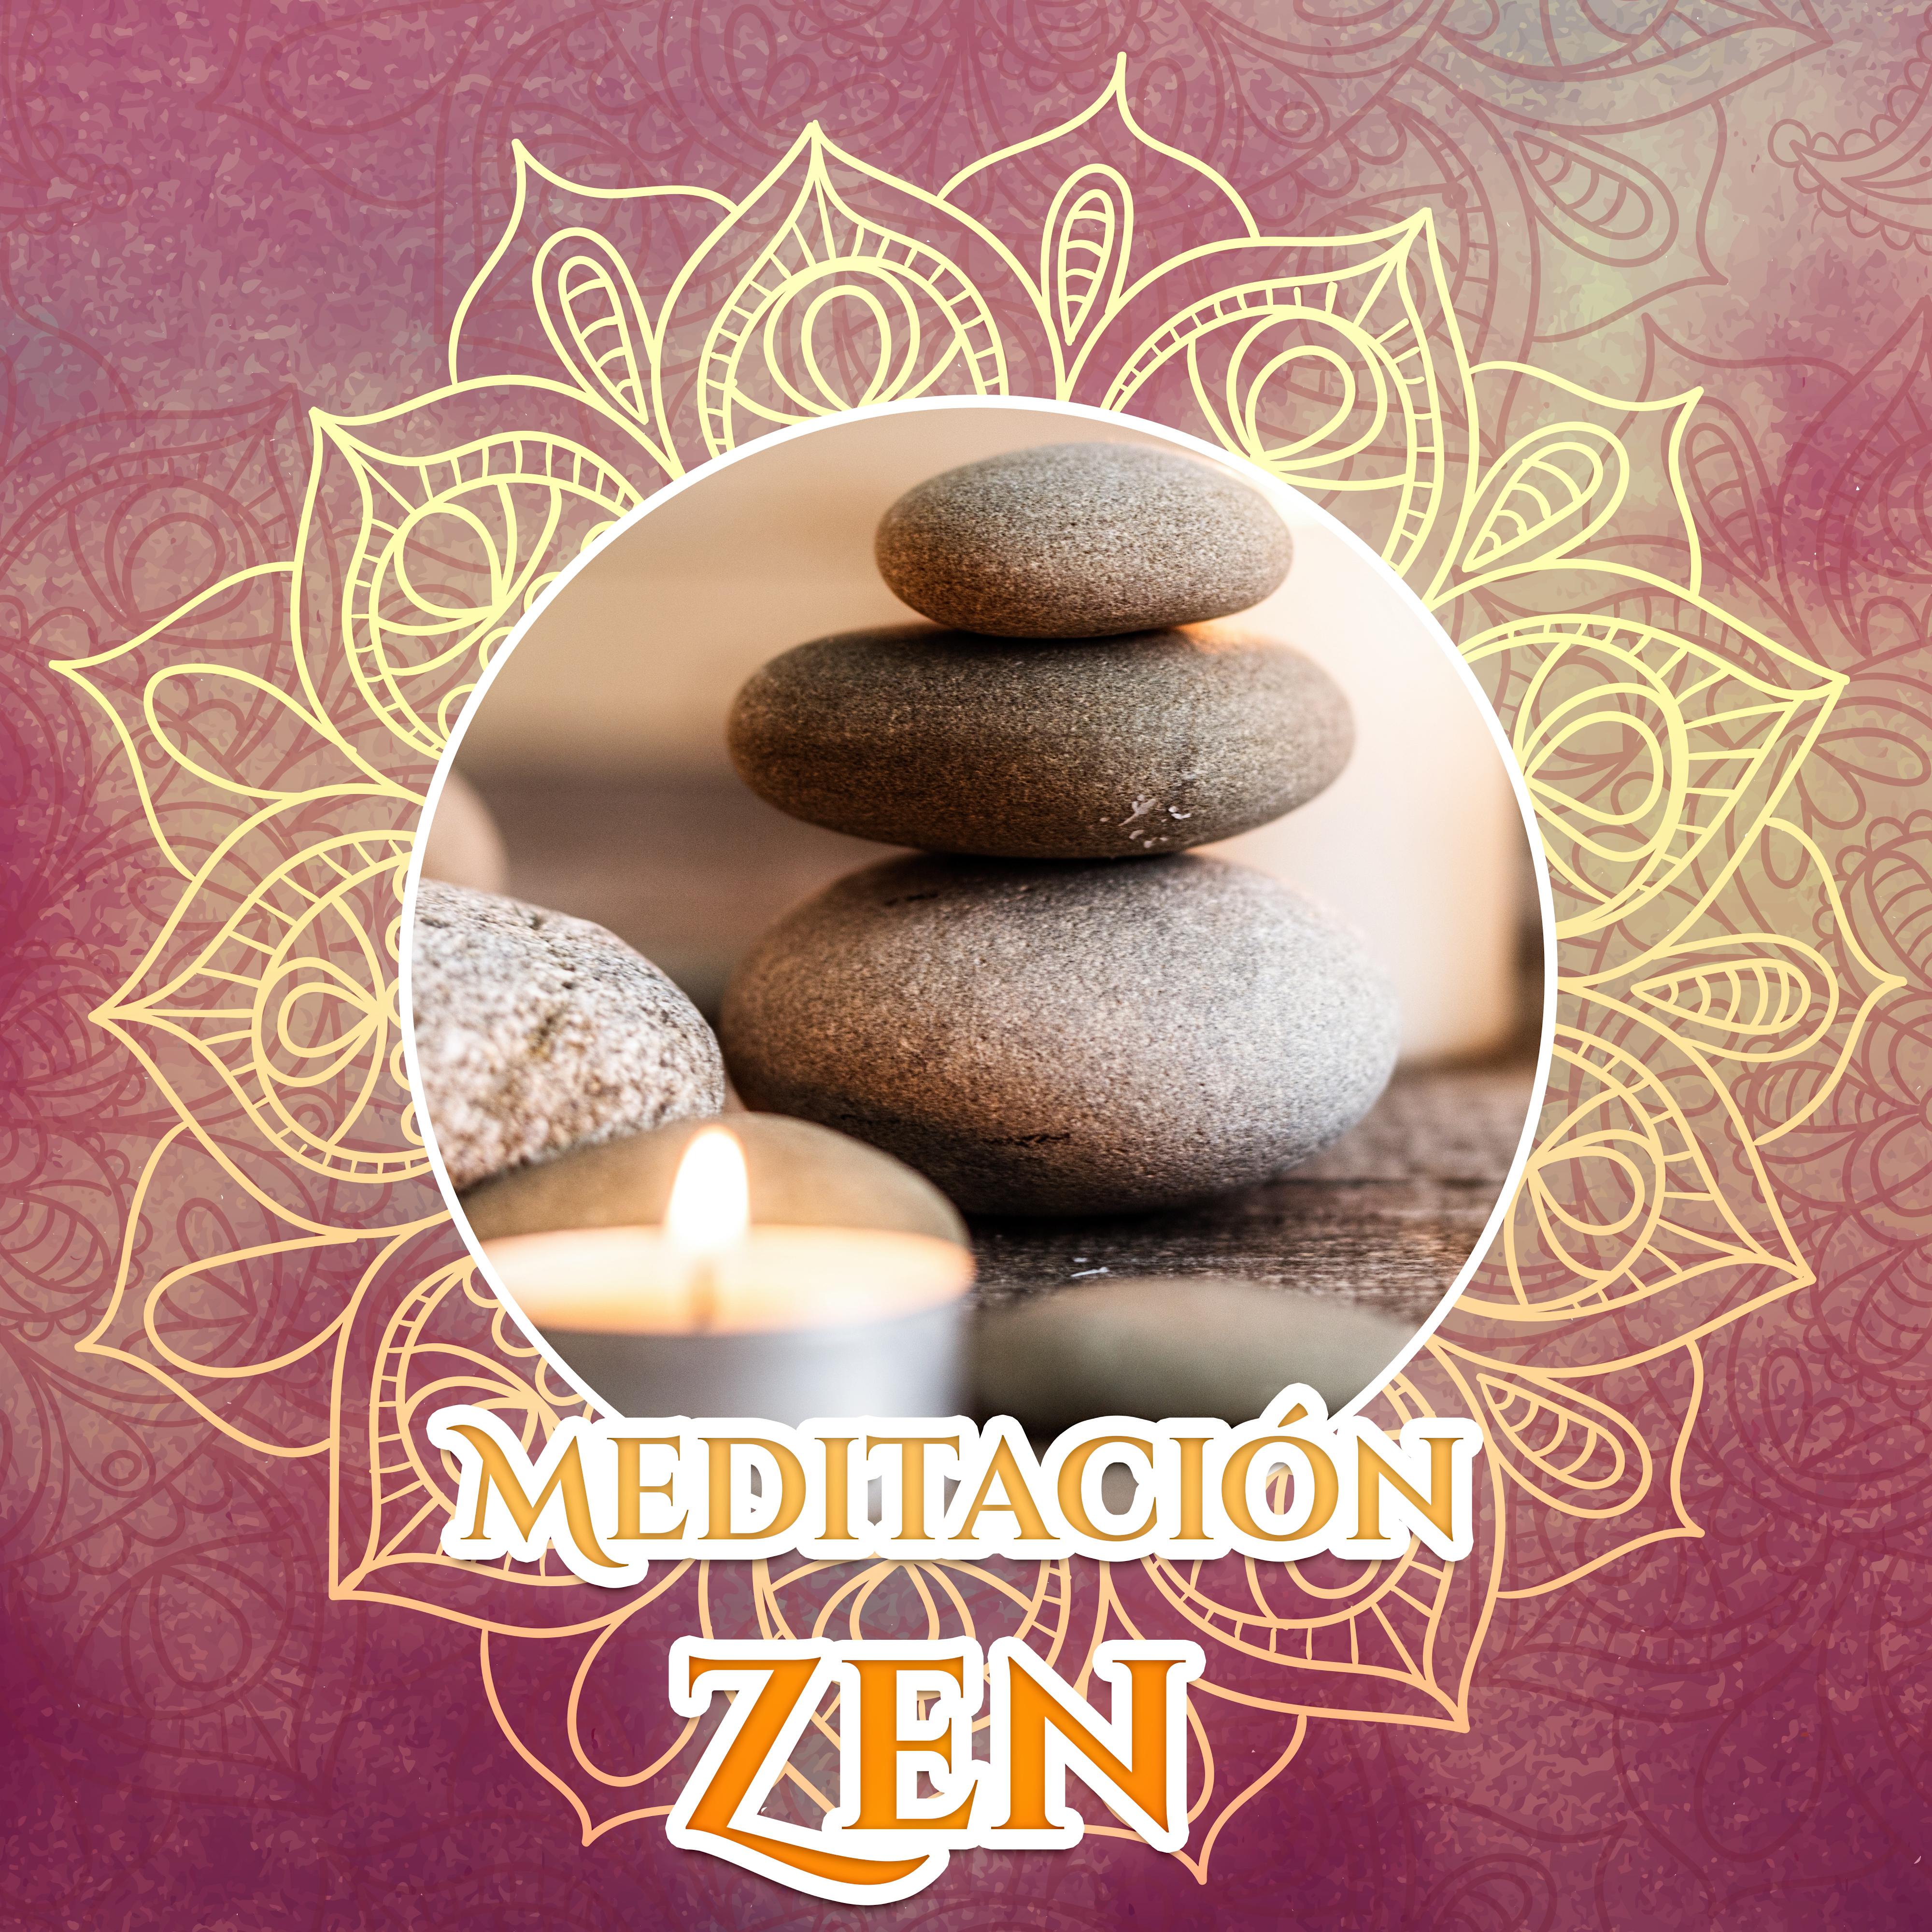 Meditacio n Zen  Nueva Era Para la Pra ctica del Oga, la Atencio n Plena, Profunda Meditacio n, la Relajacio n